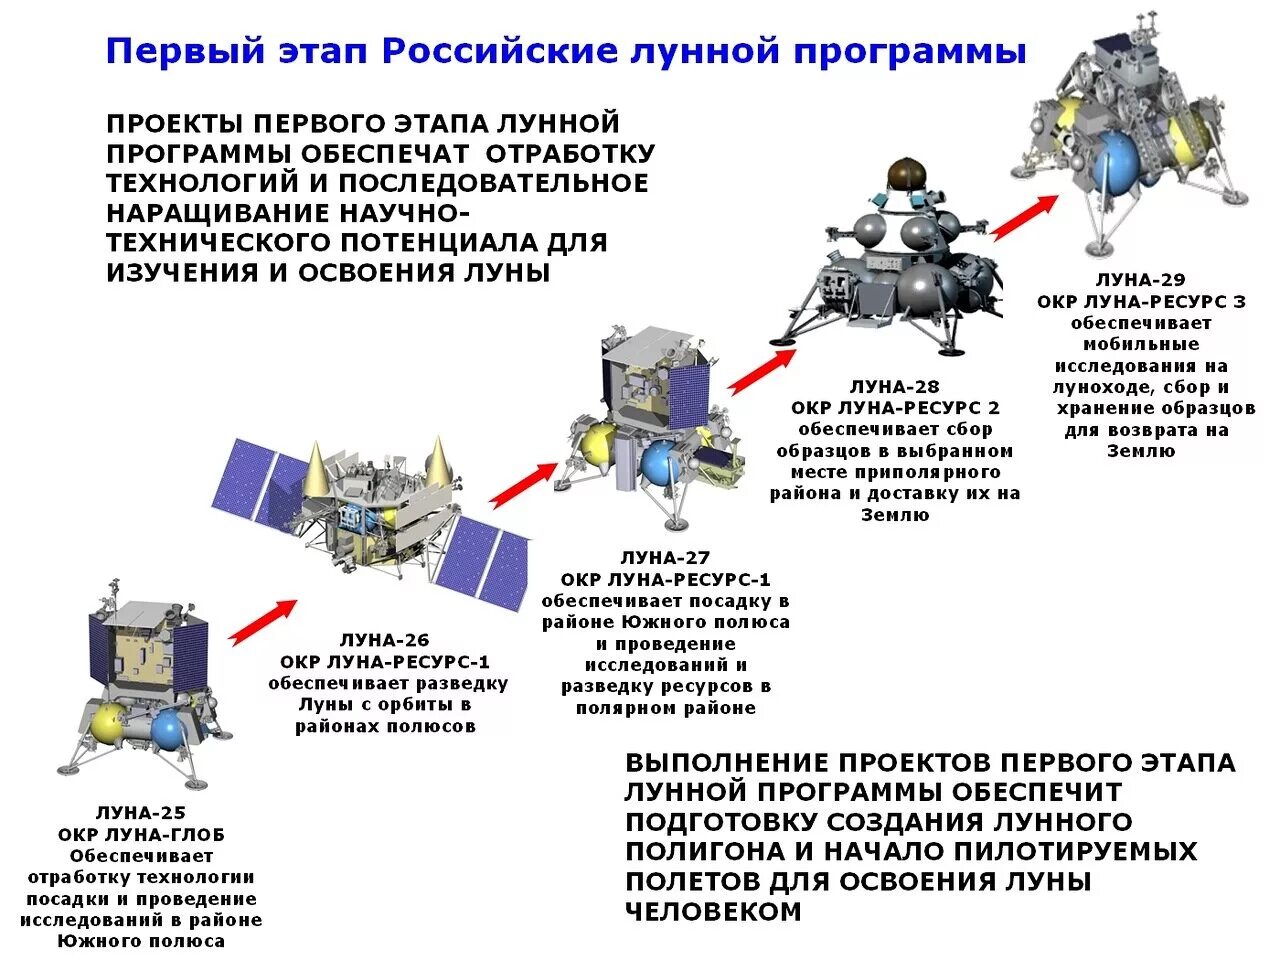 Программа по освоению луны. Лунная станция Роскосмос проект. Роскосмос Лунная программа. Российская Лунная программа 2 этап. Лунная программа России 2016-2025.